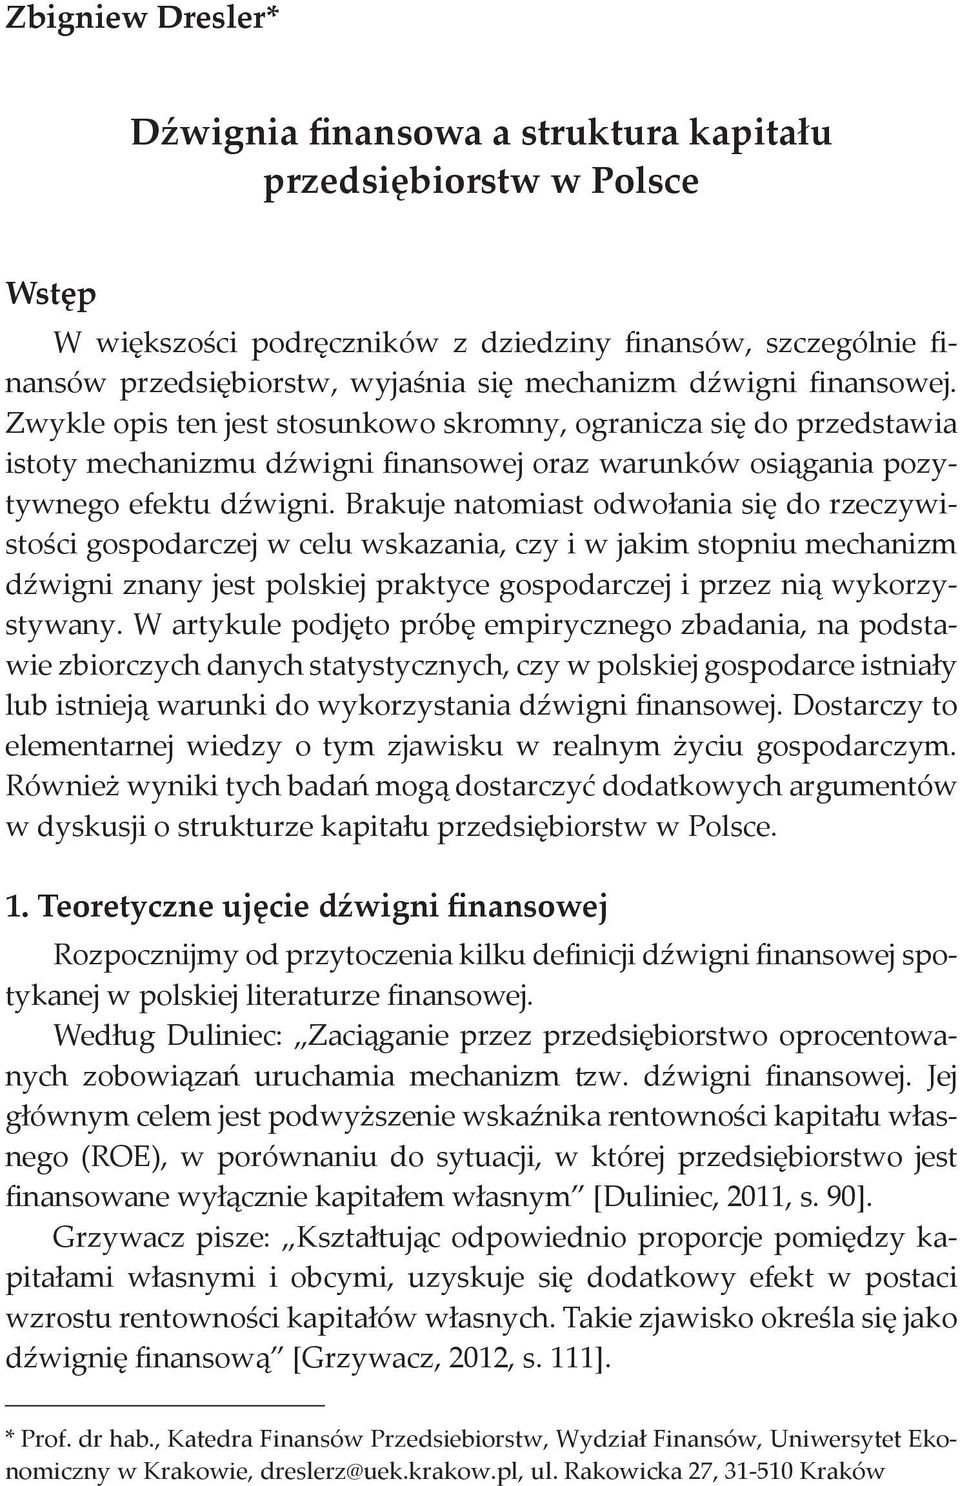 Dźwignia finansowa a struktura kapitału przedsiębiorstw w Polsce - PDF Free  Download